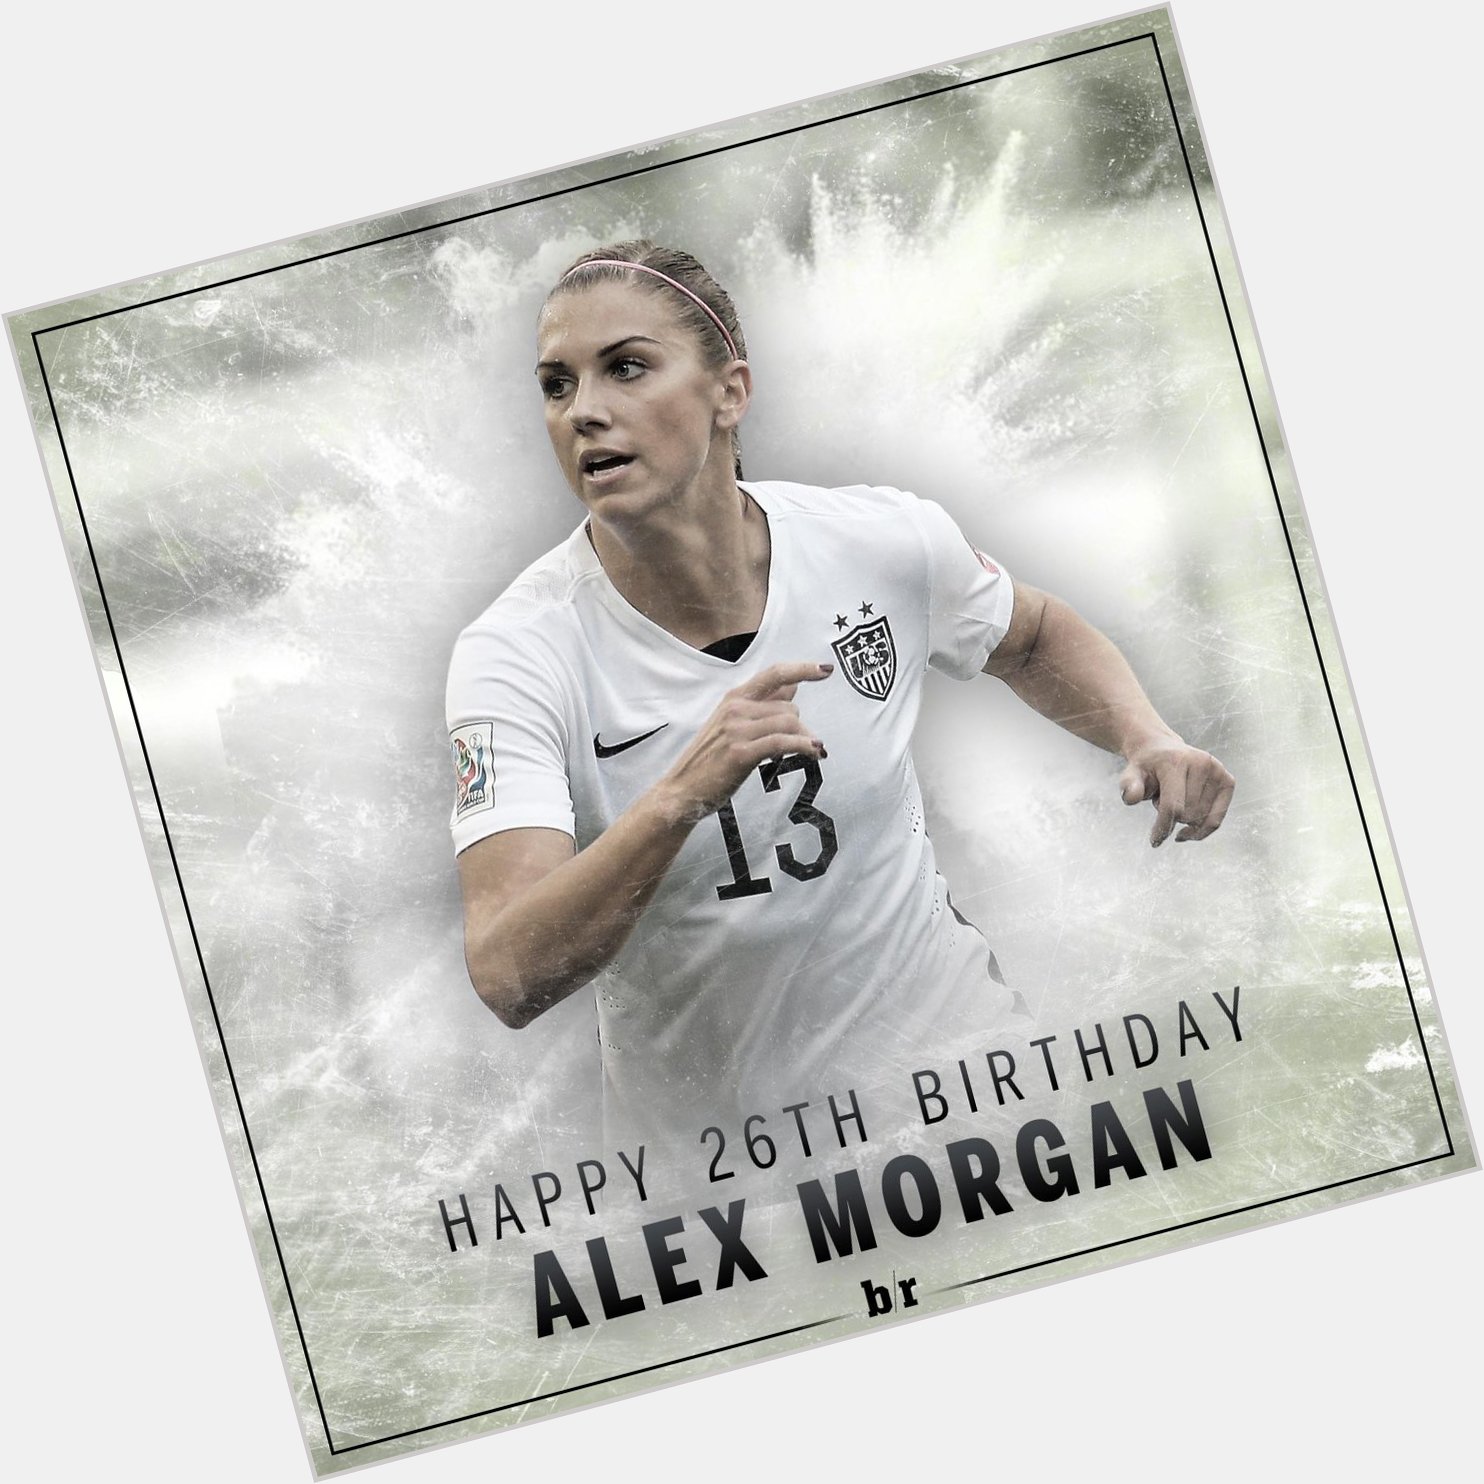   Happy birthday, Happy Birthday to my girl Alex Morgan!!